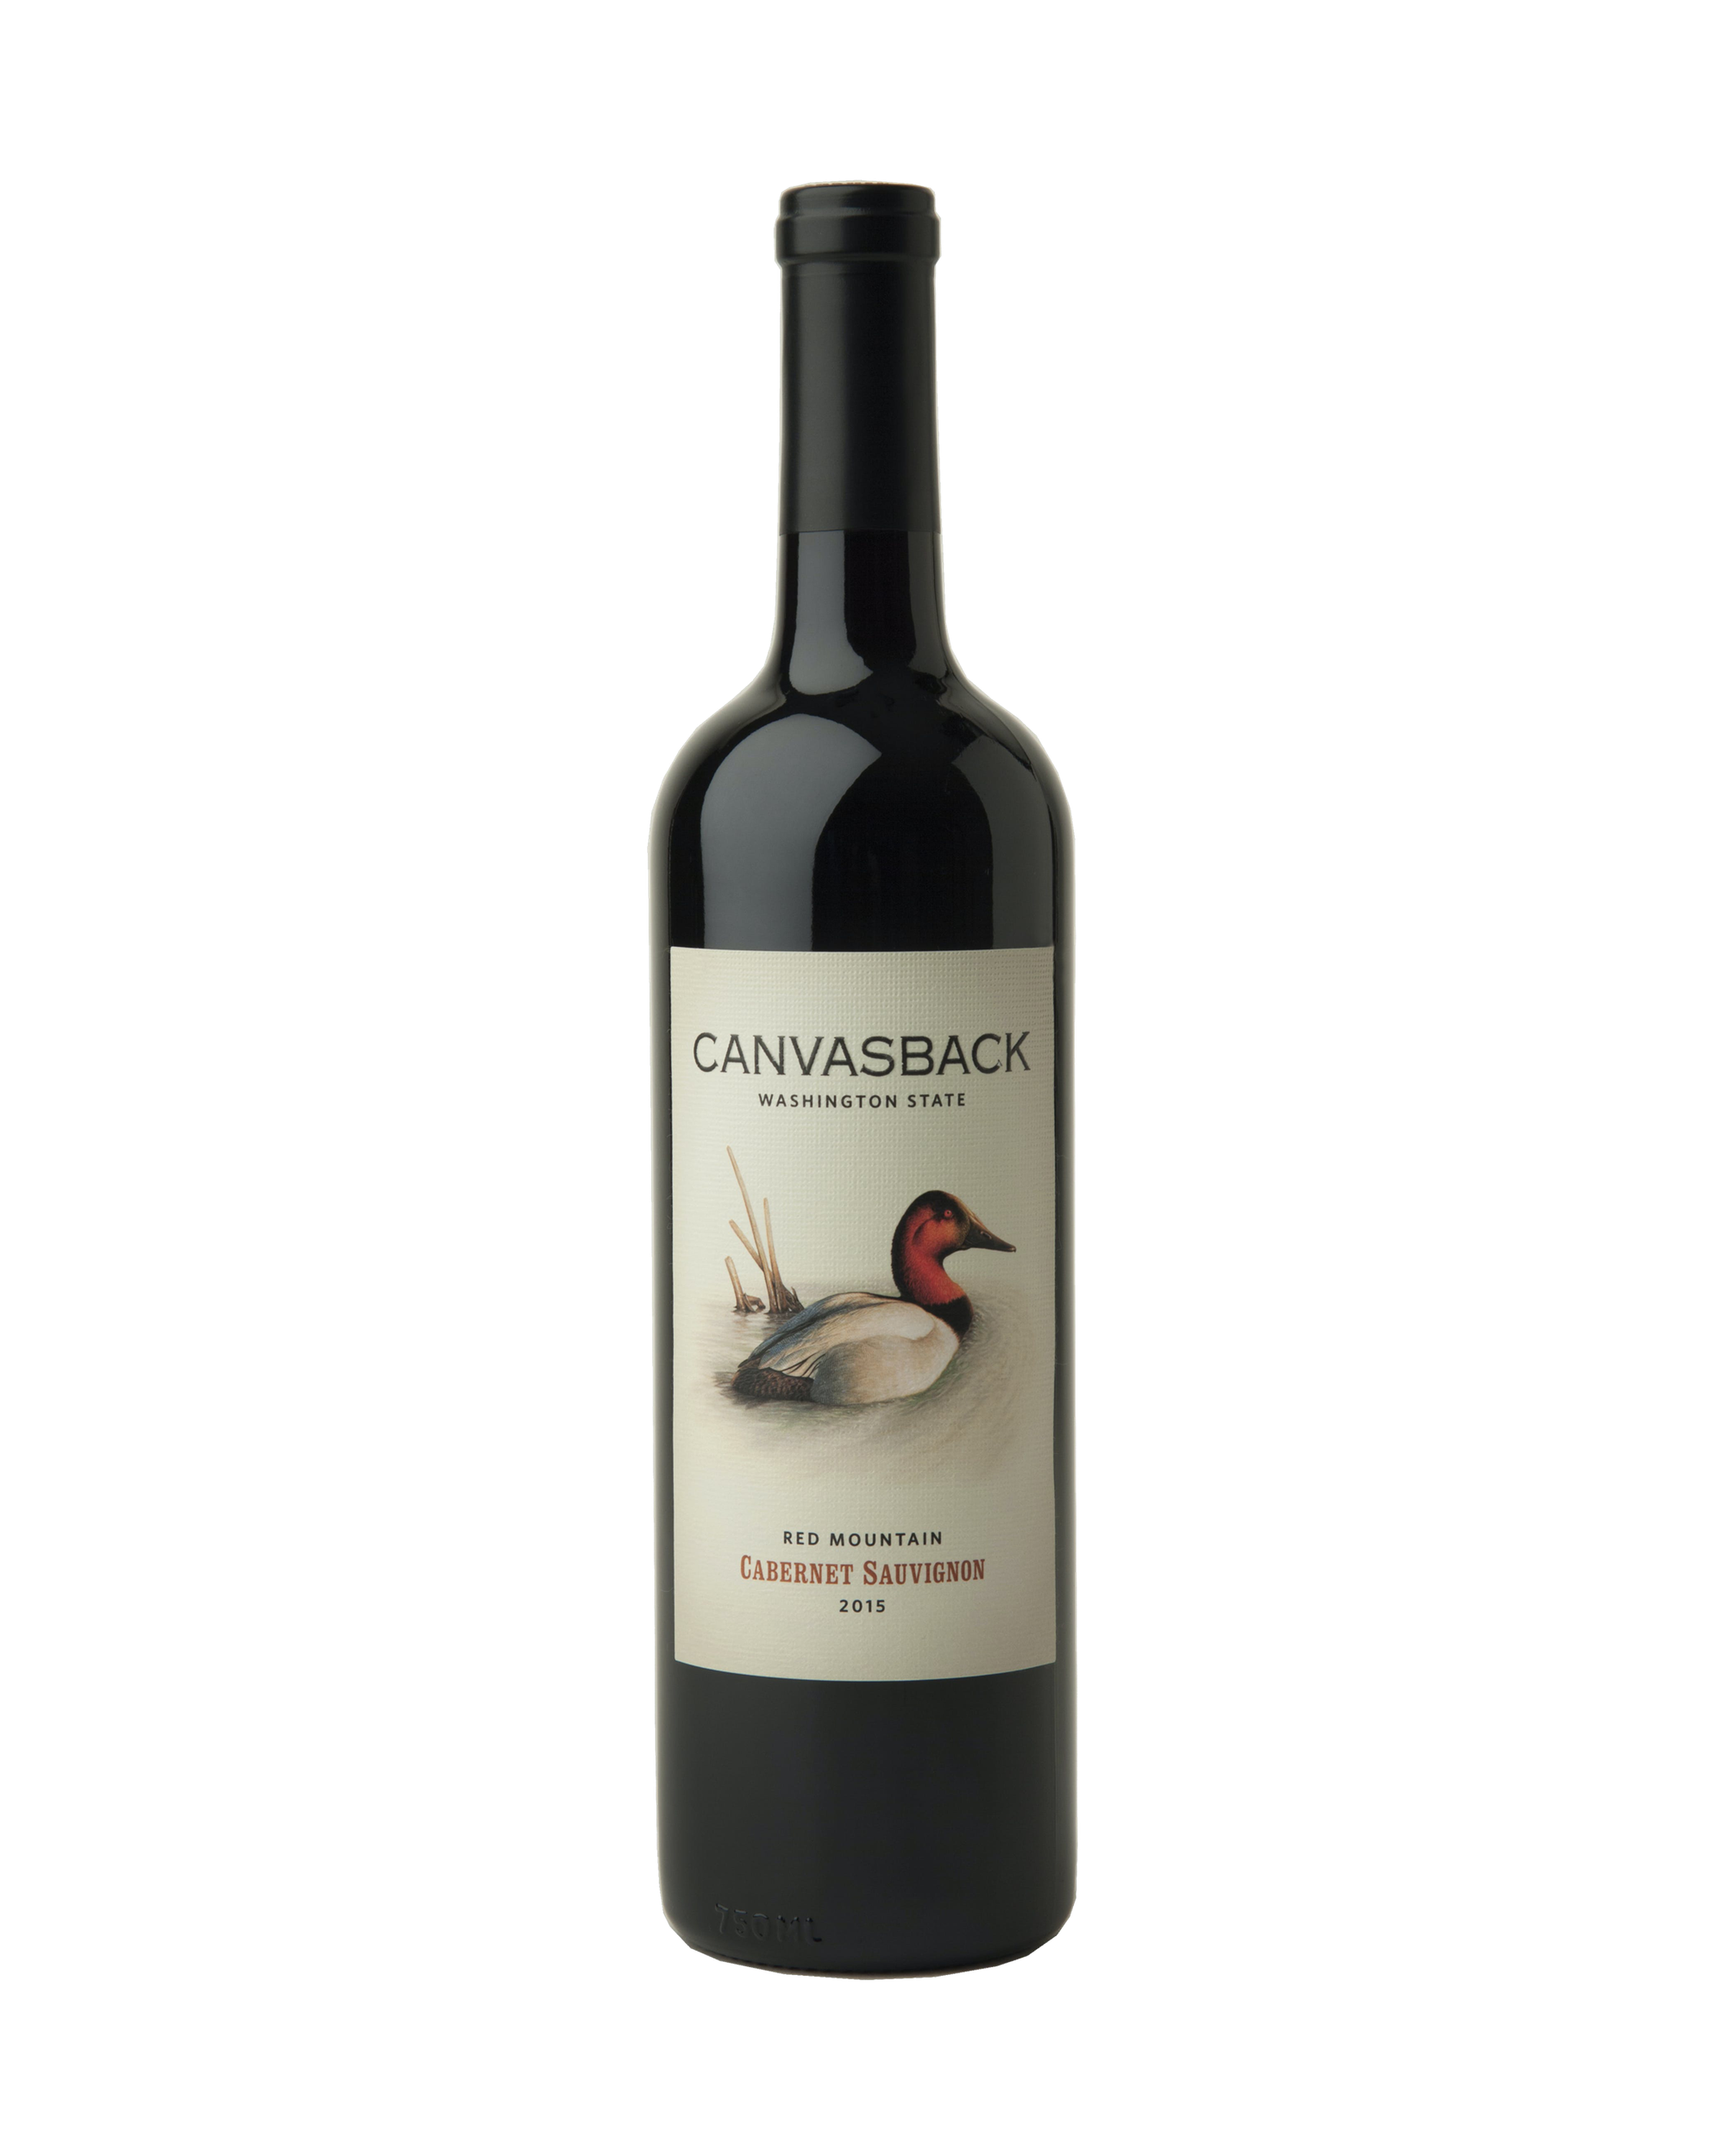 Canvasback Cabernet Sauvignon